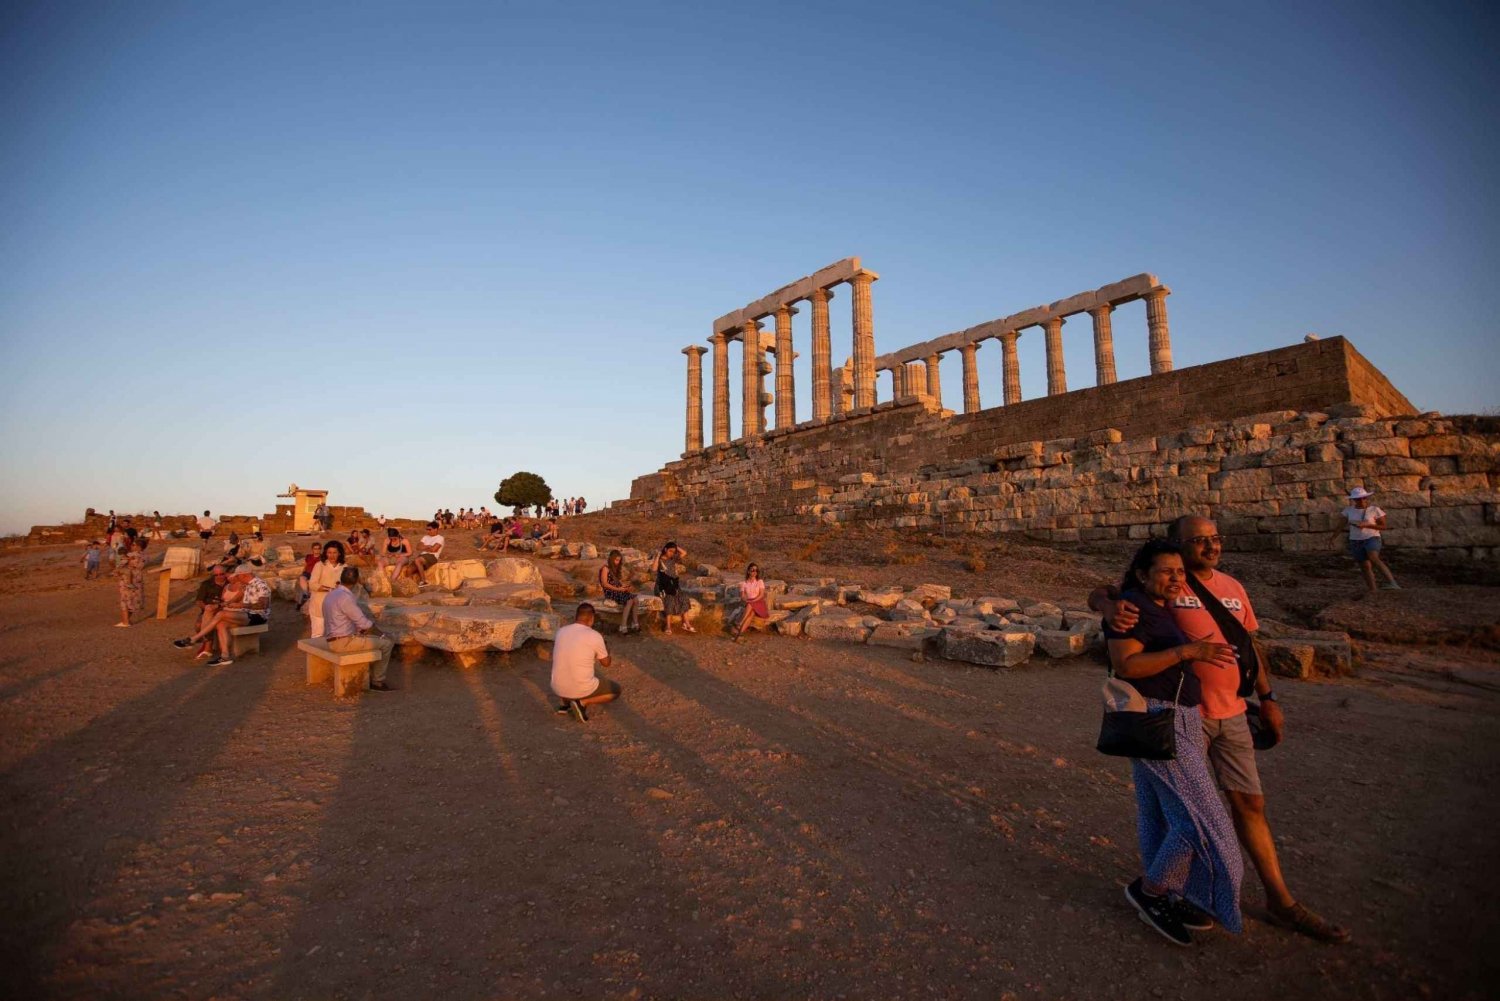 Atenas: Excursión al atardecer al Cabo Sounion y al Templo de Poseidón